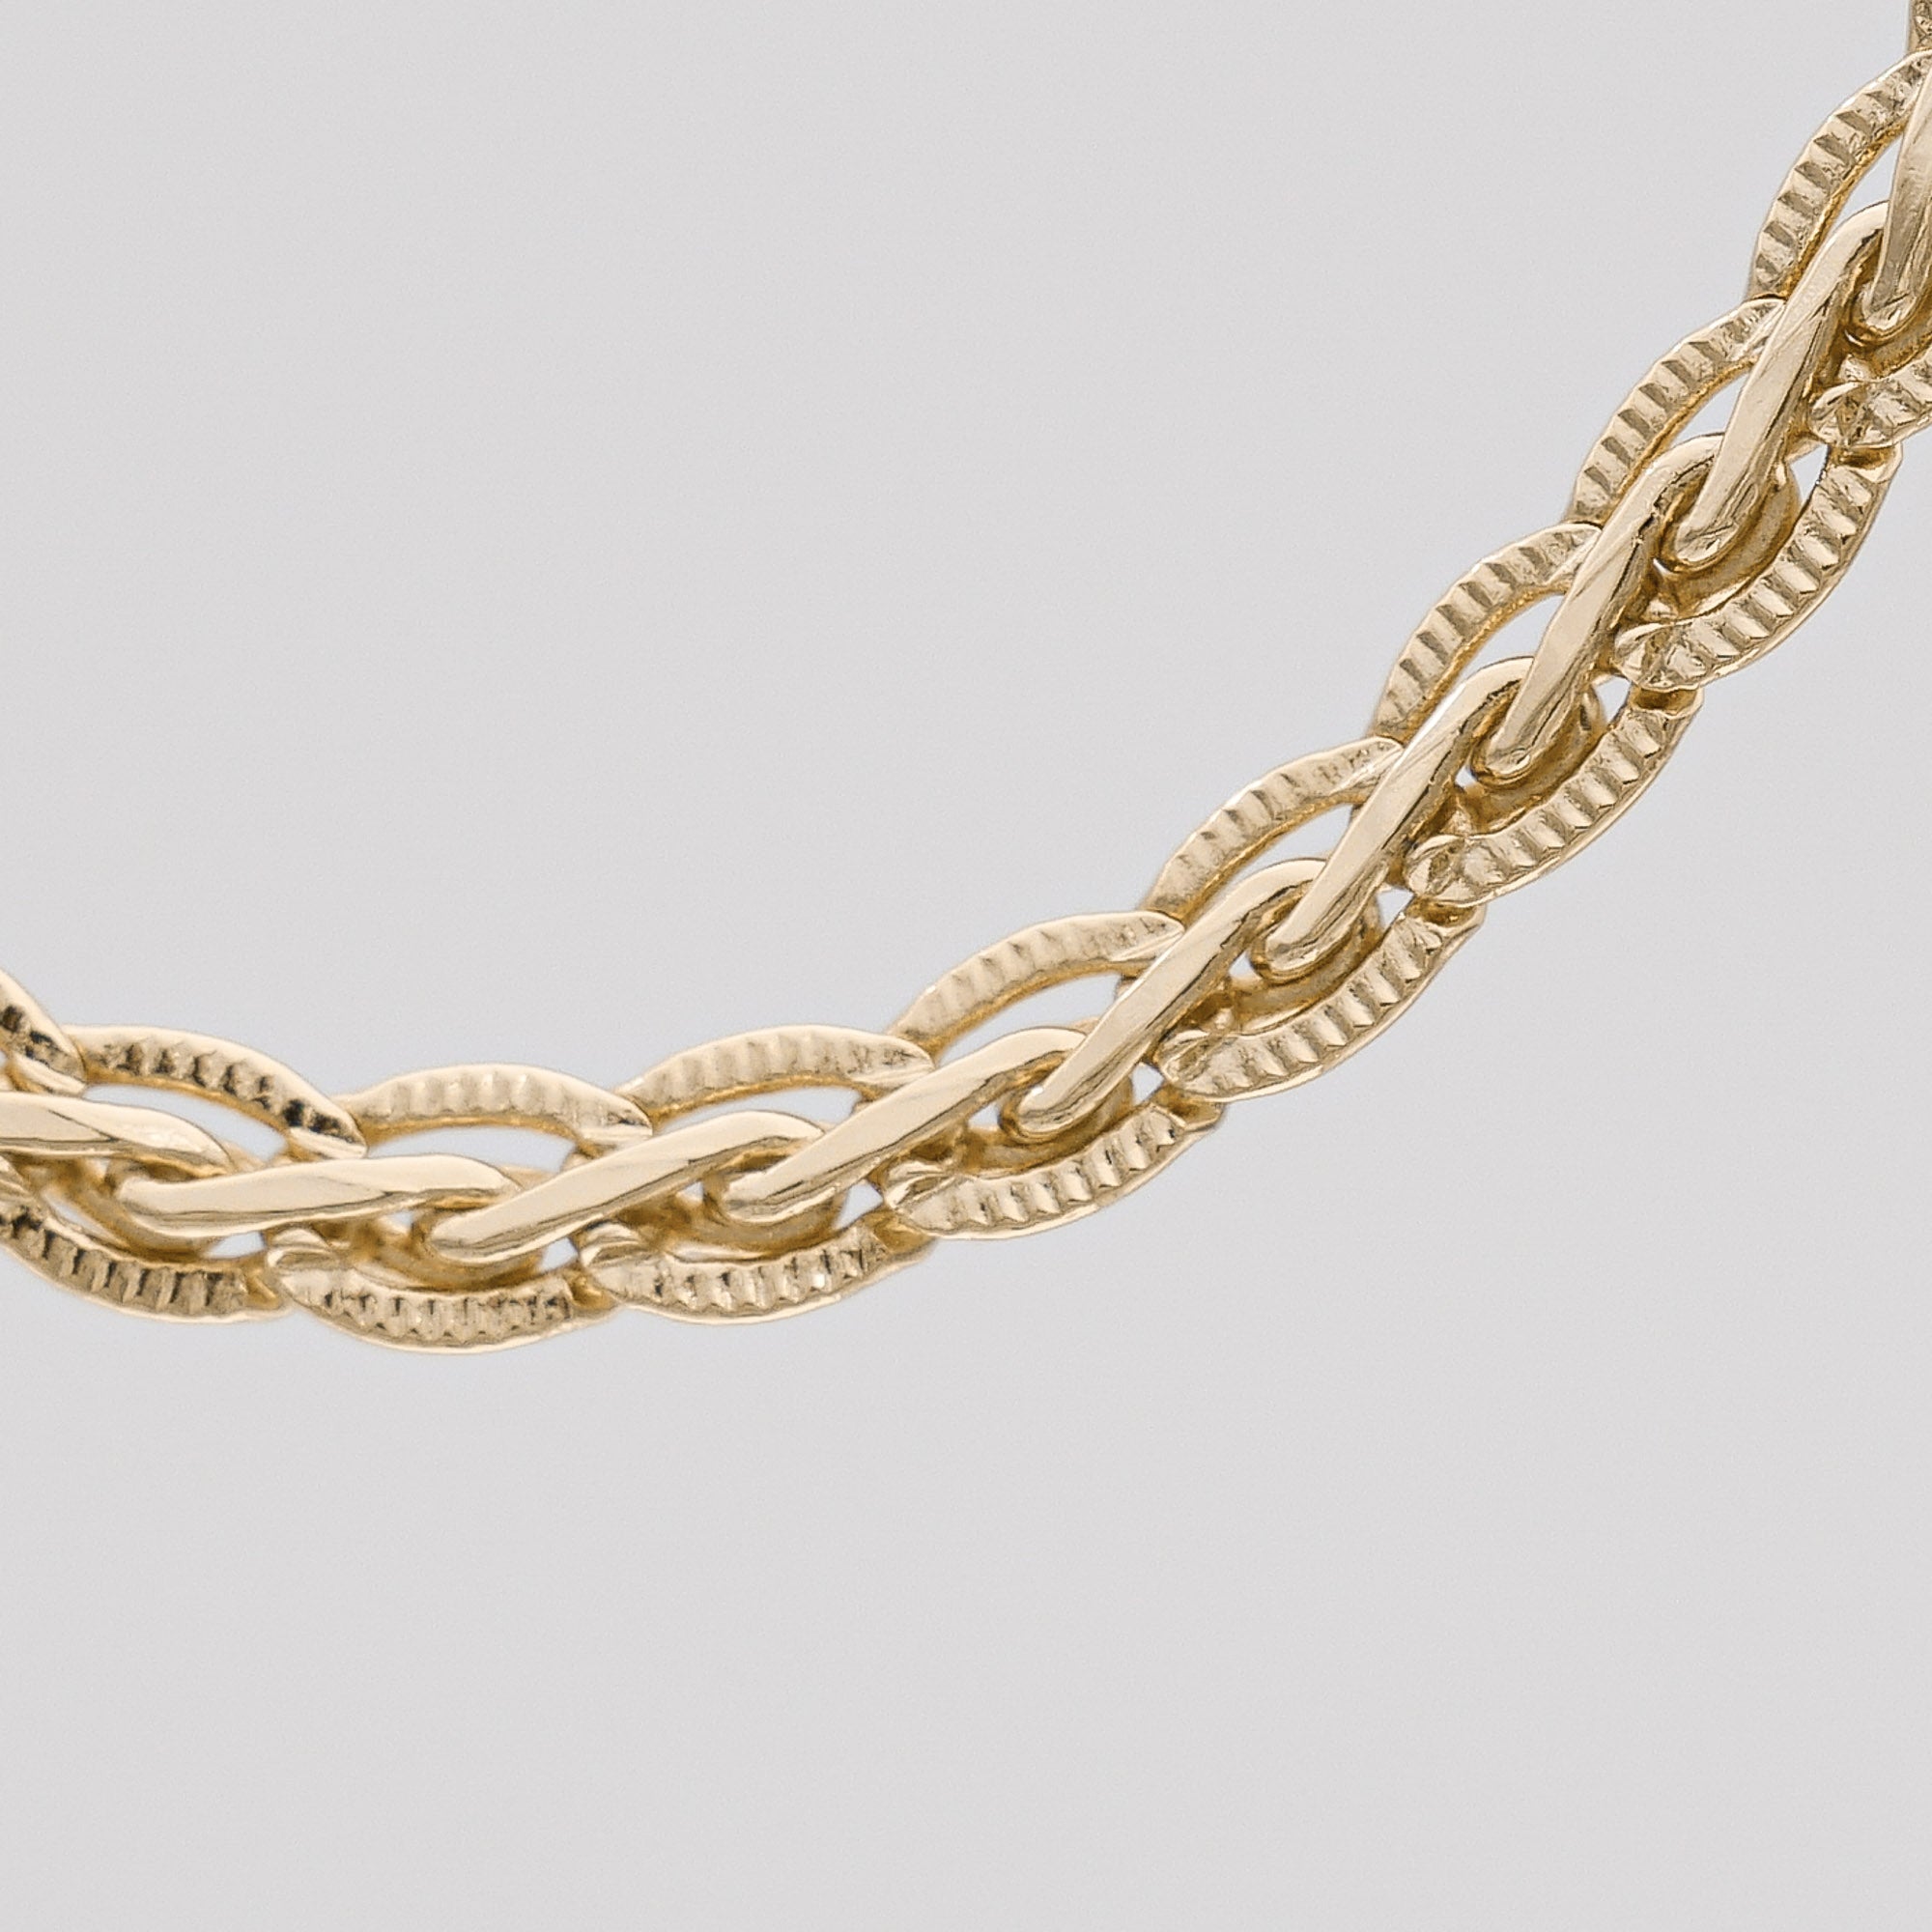 Liana Braided Chain